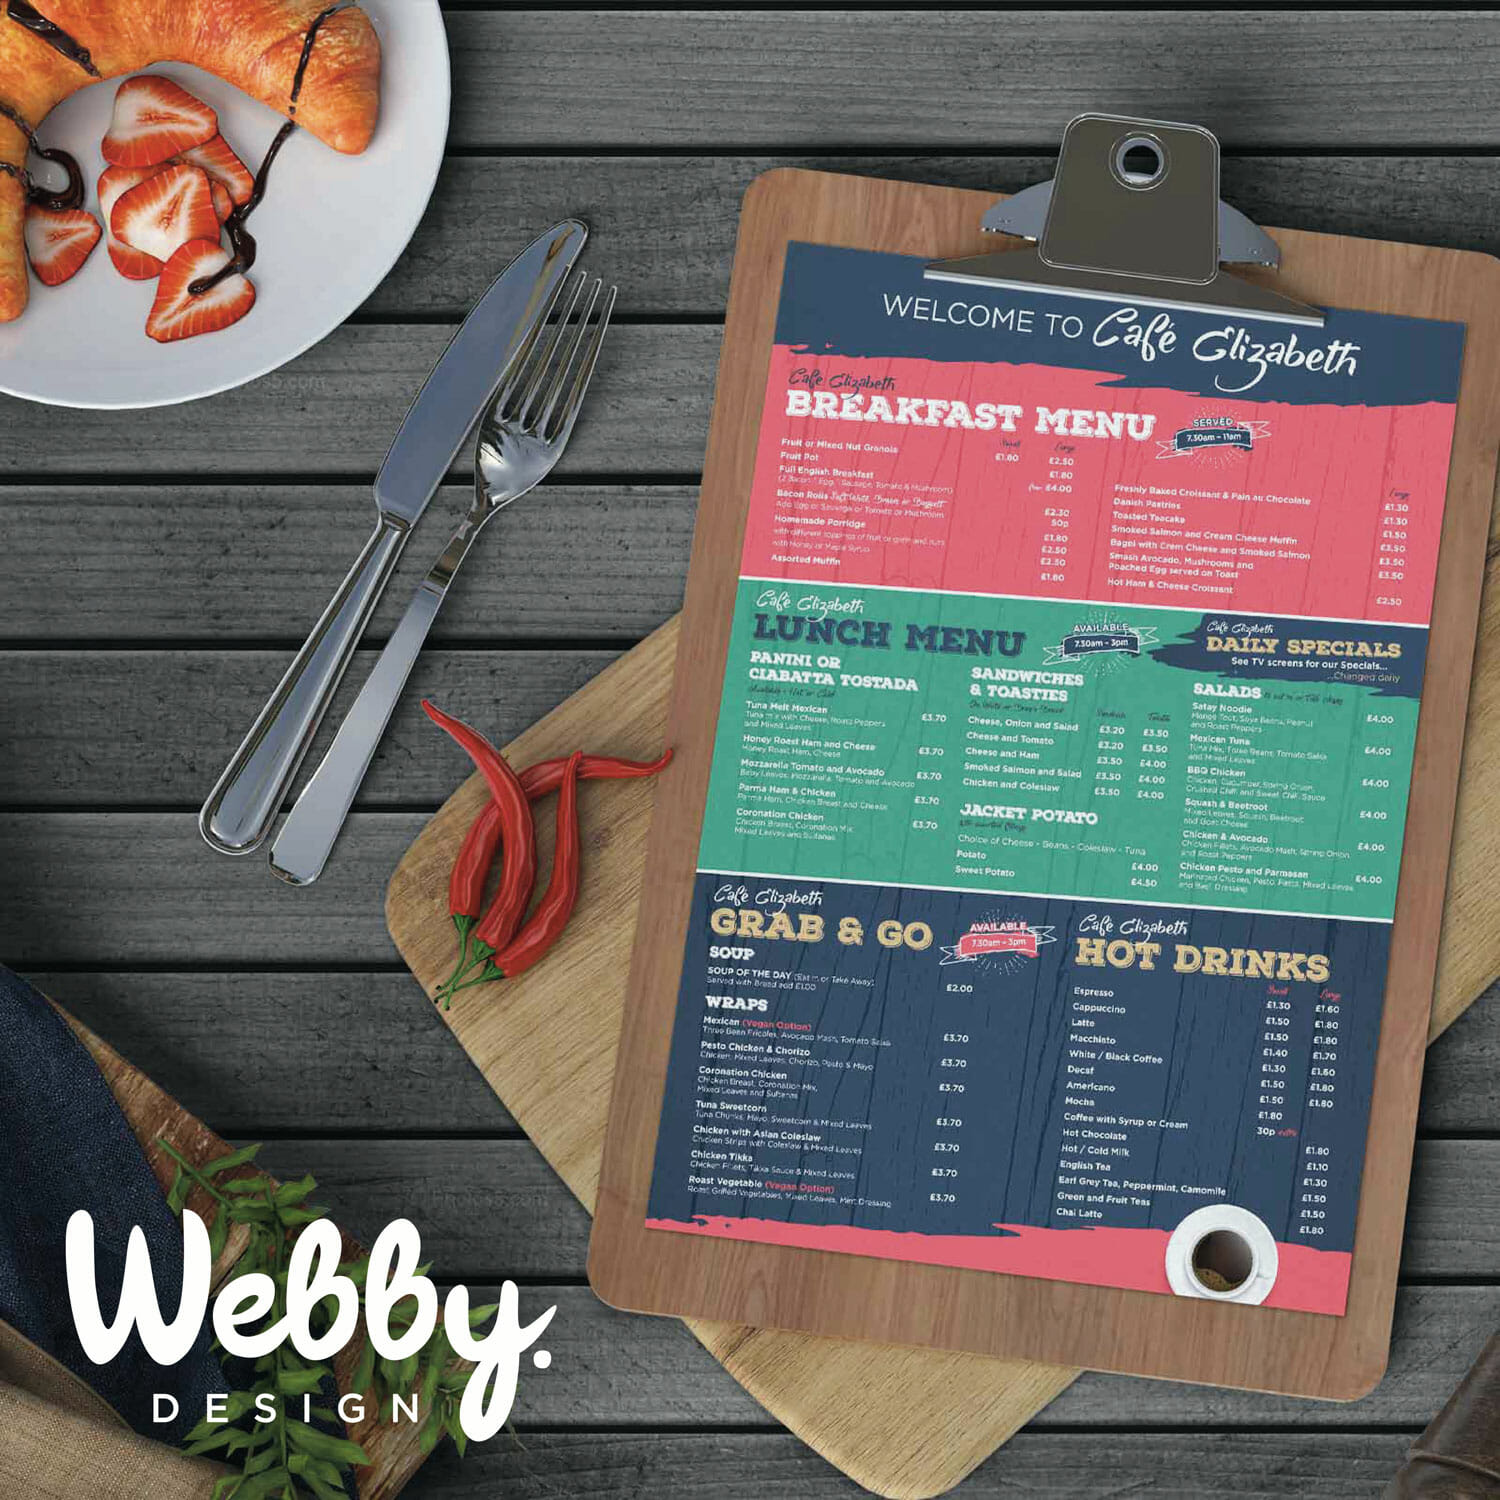 Webby Design Restaurant or Cafe Menu Design